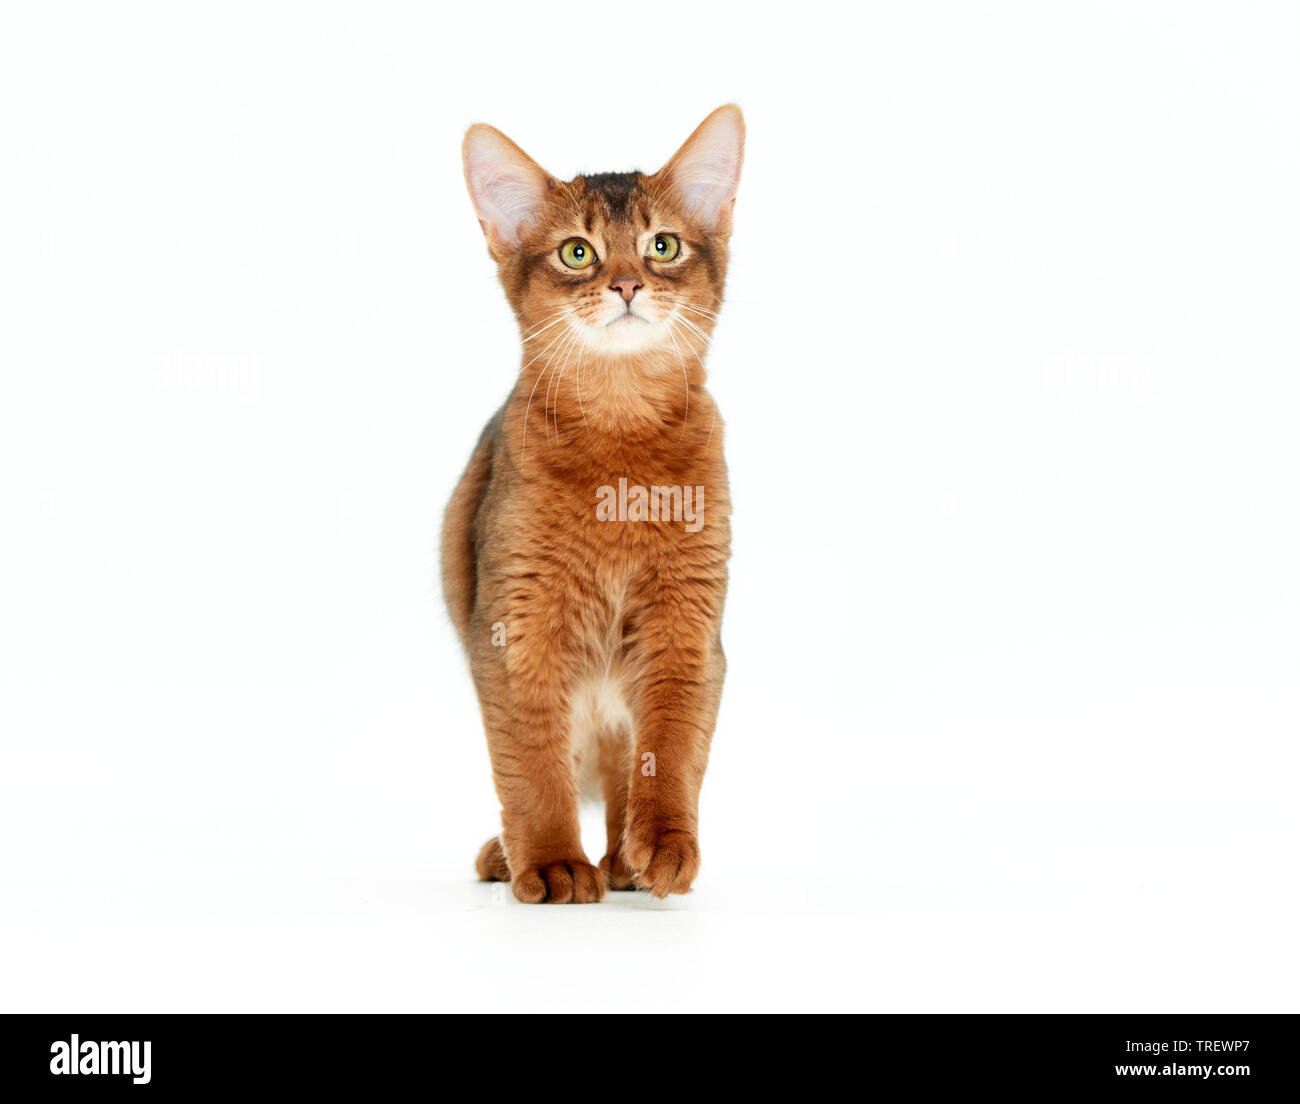 Somali cat. Chaton marche, vu de face. Studio photo sur un fond blanc. Banque D'Images